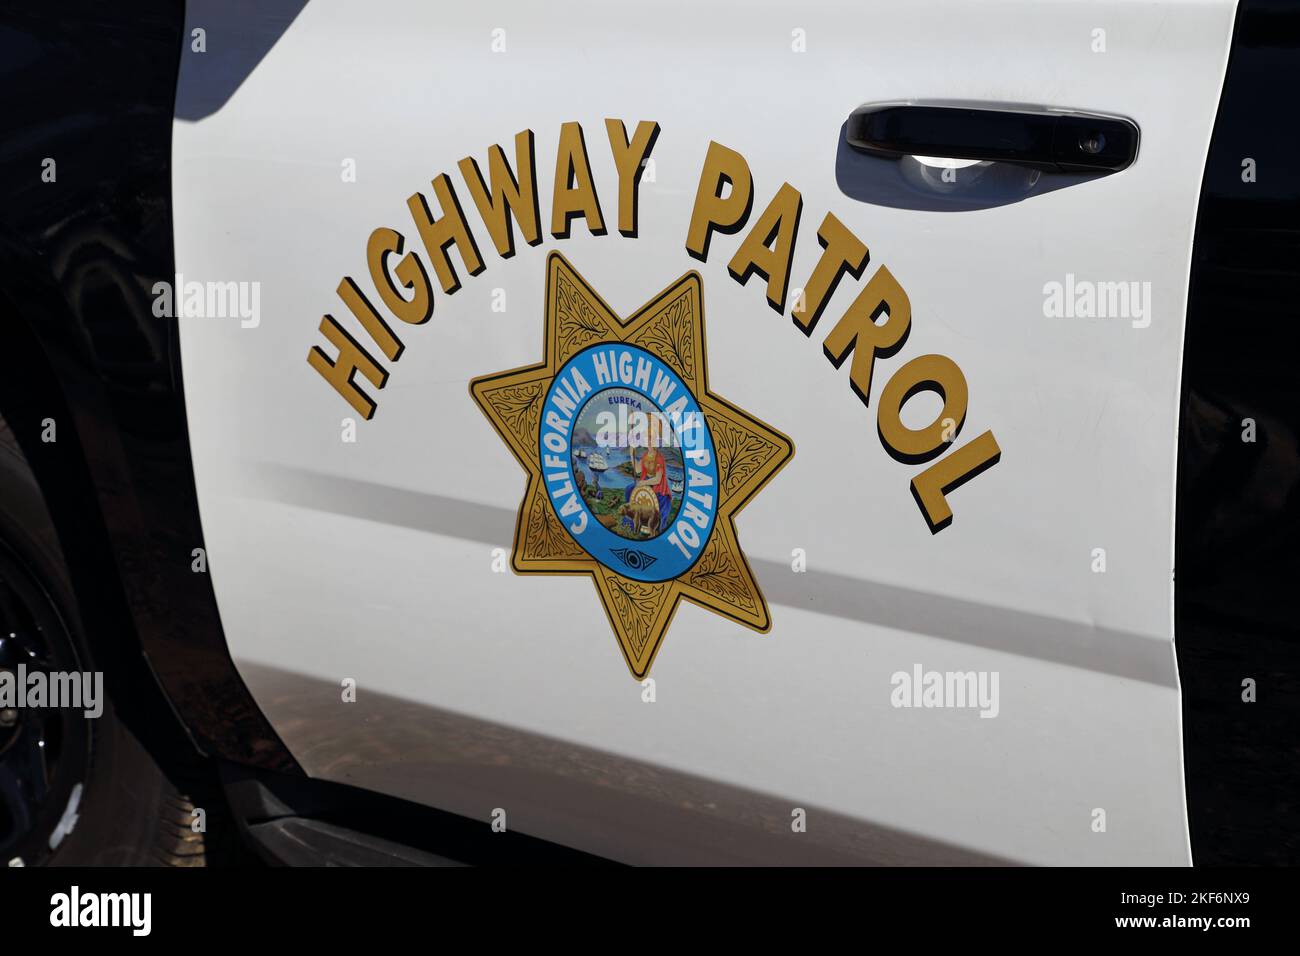 Los Angeles, CA / USA - 12 novembre 2022: Il logo Eureka della California Highway Patrol viene visualizzato sul lato di un veicolo della polizia. Foto Stock